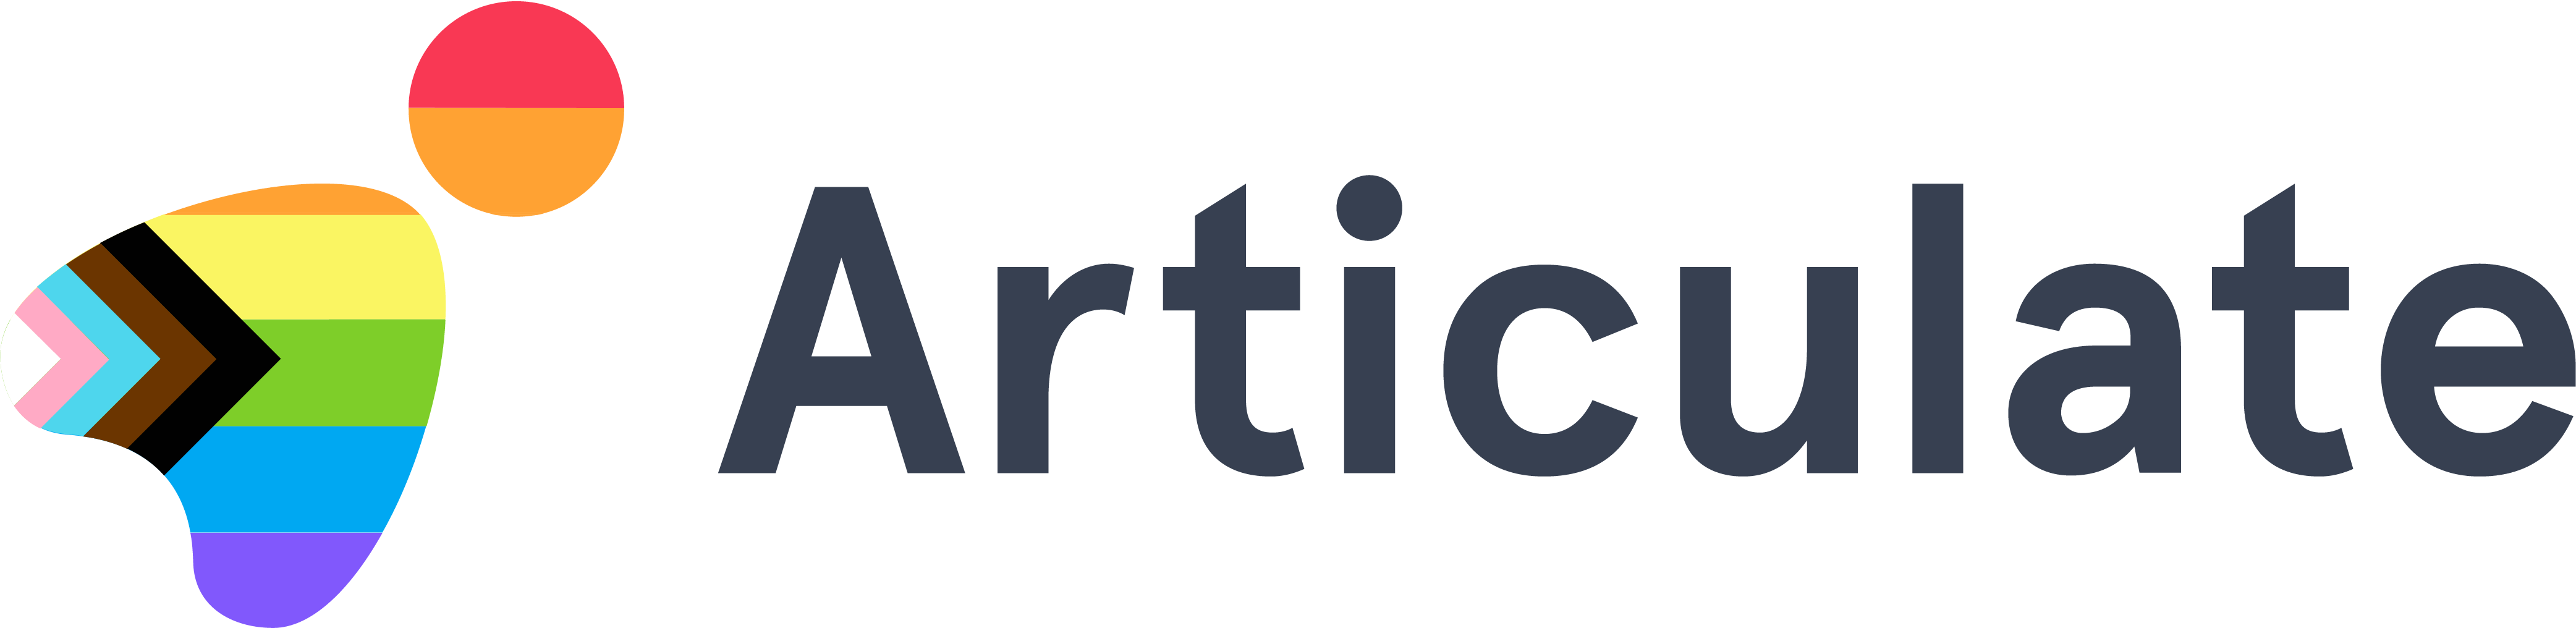 Articulate_Full-Logo_Pride-Awareness